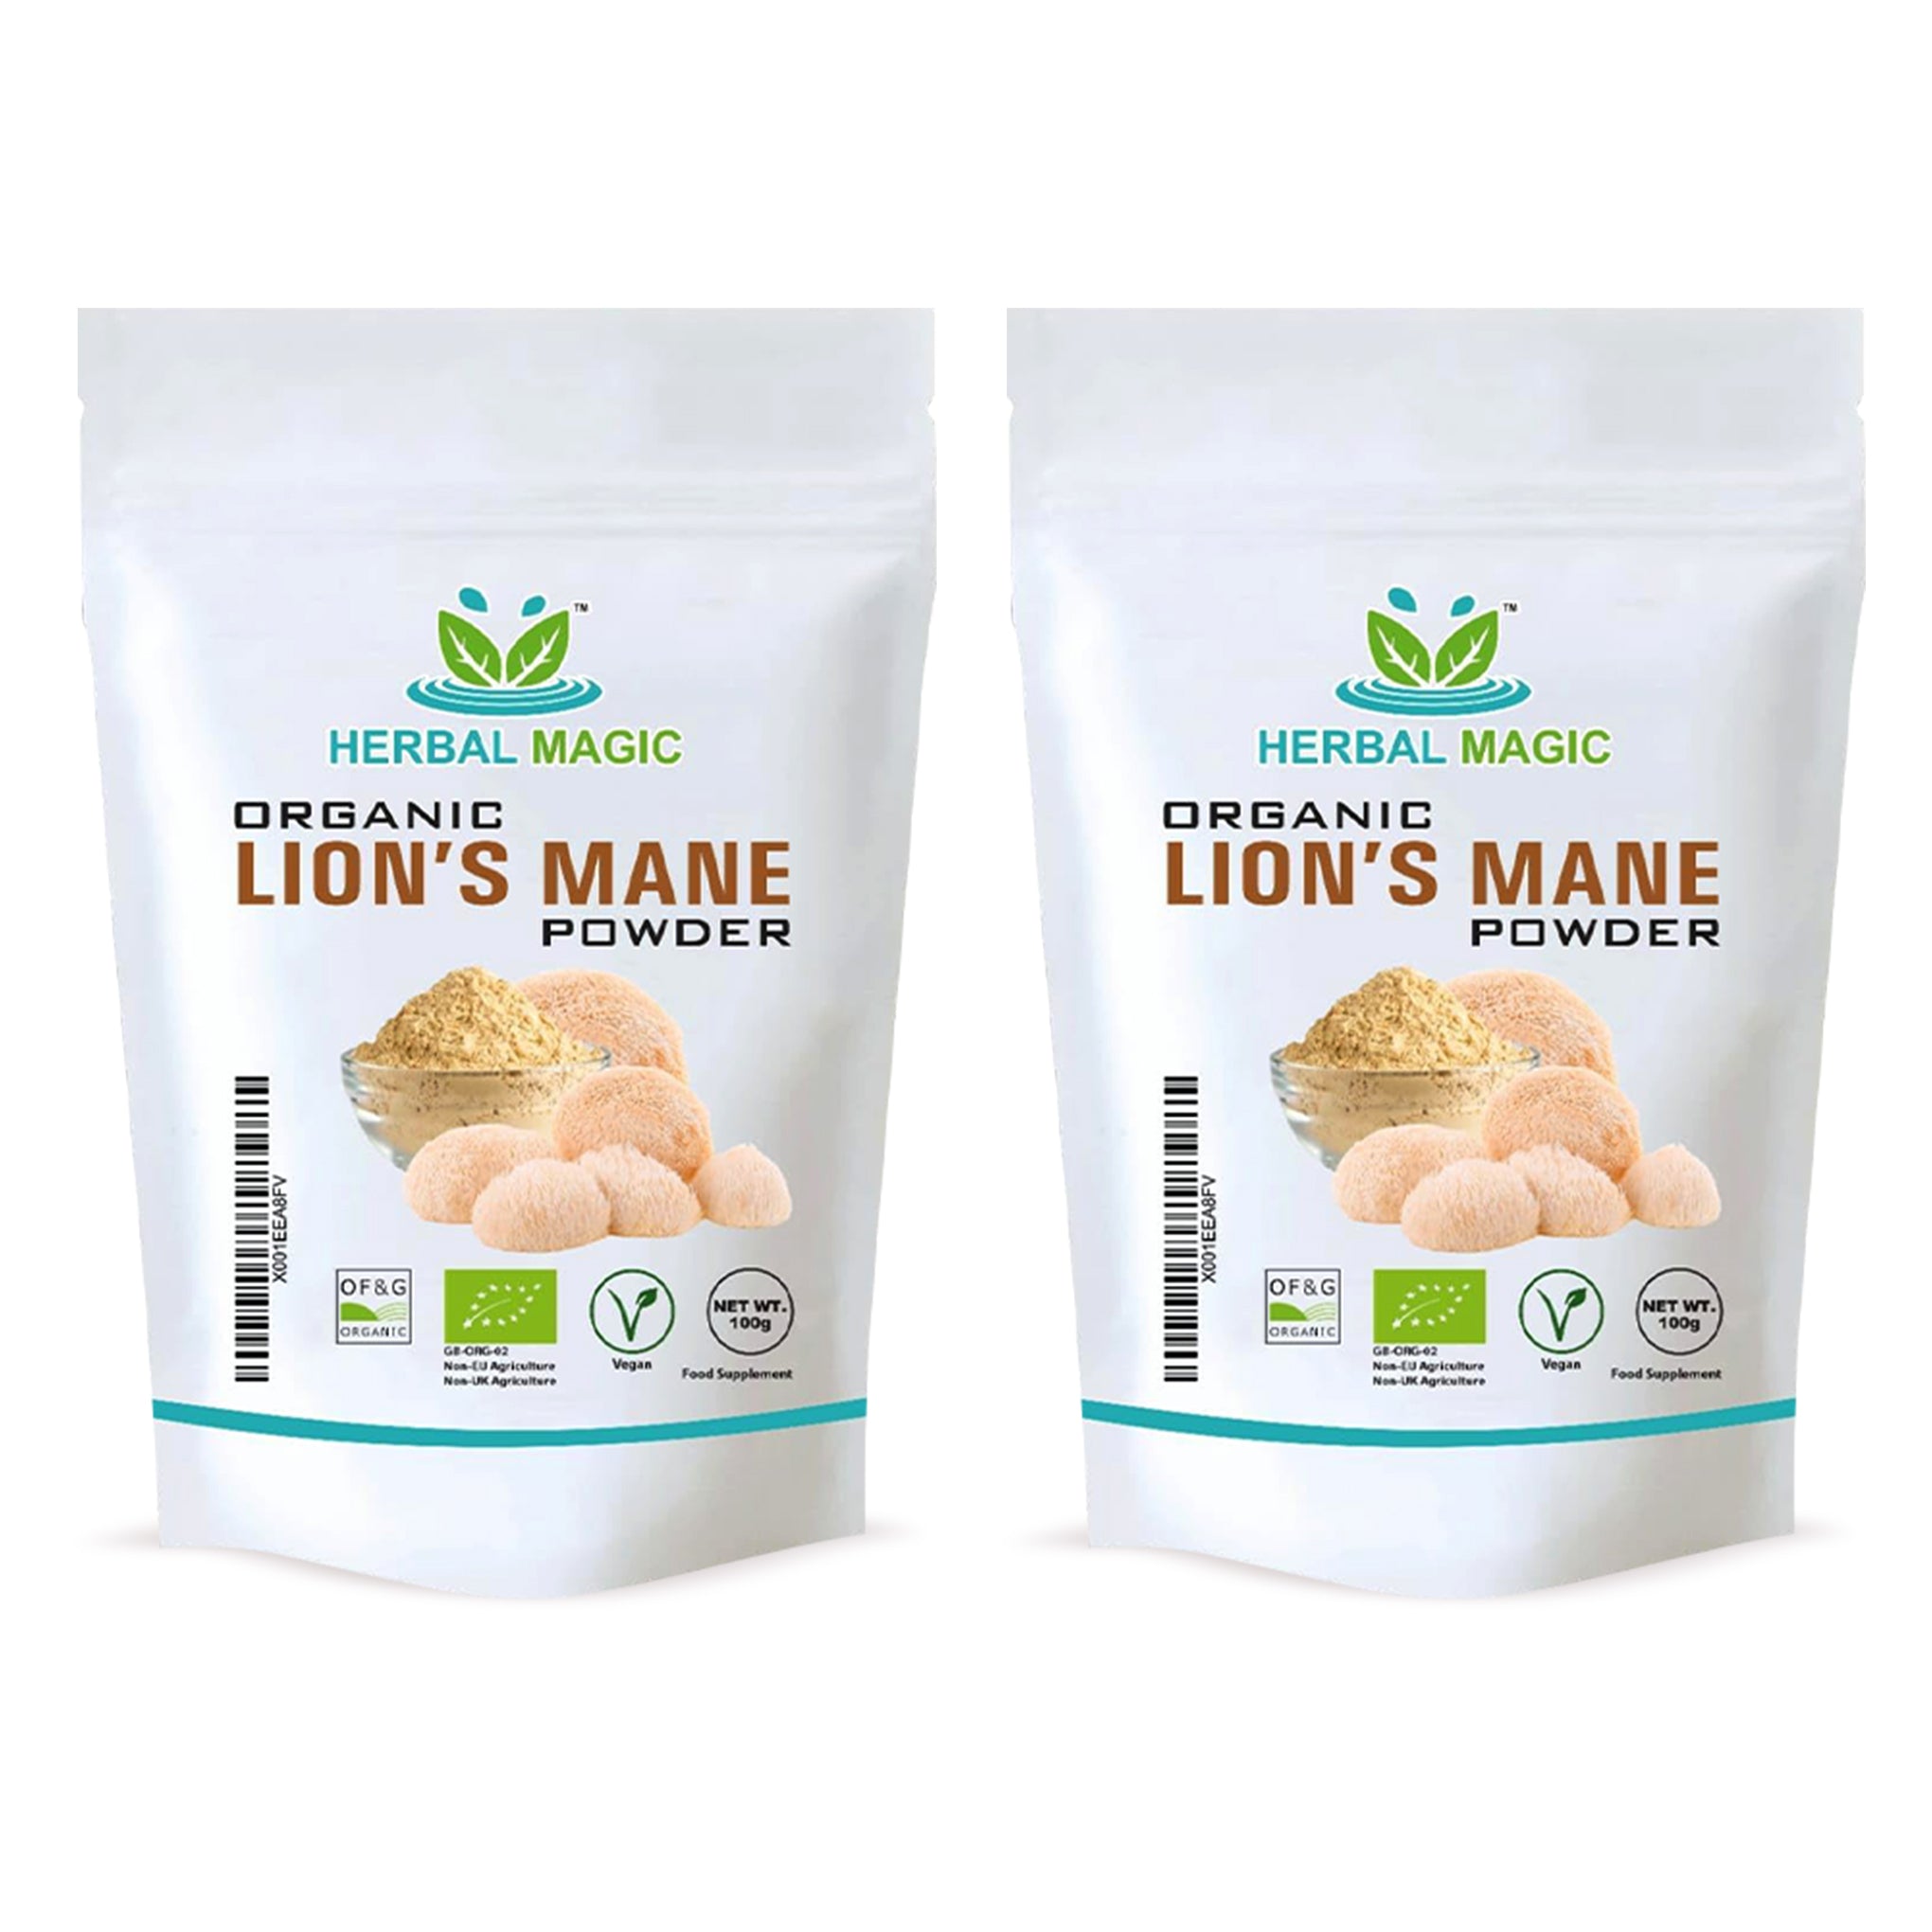 Natural Lion’s Mane Powder